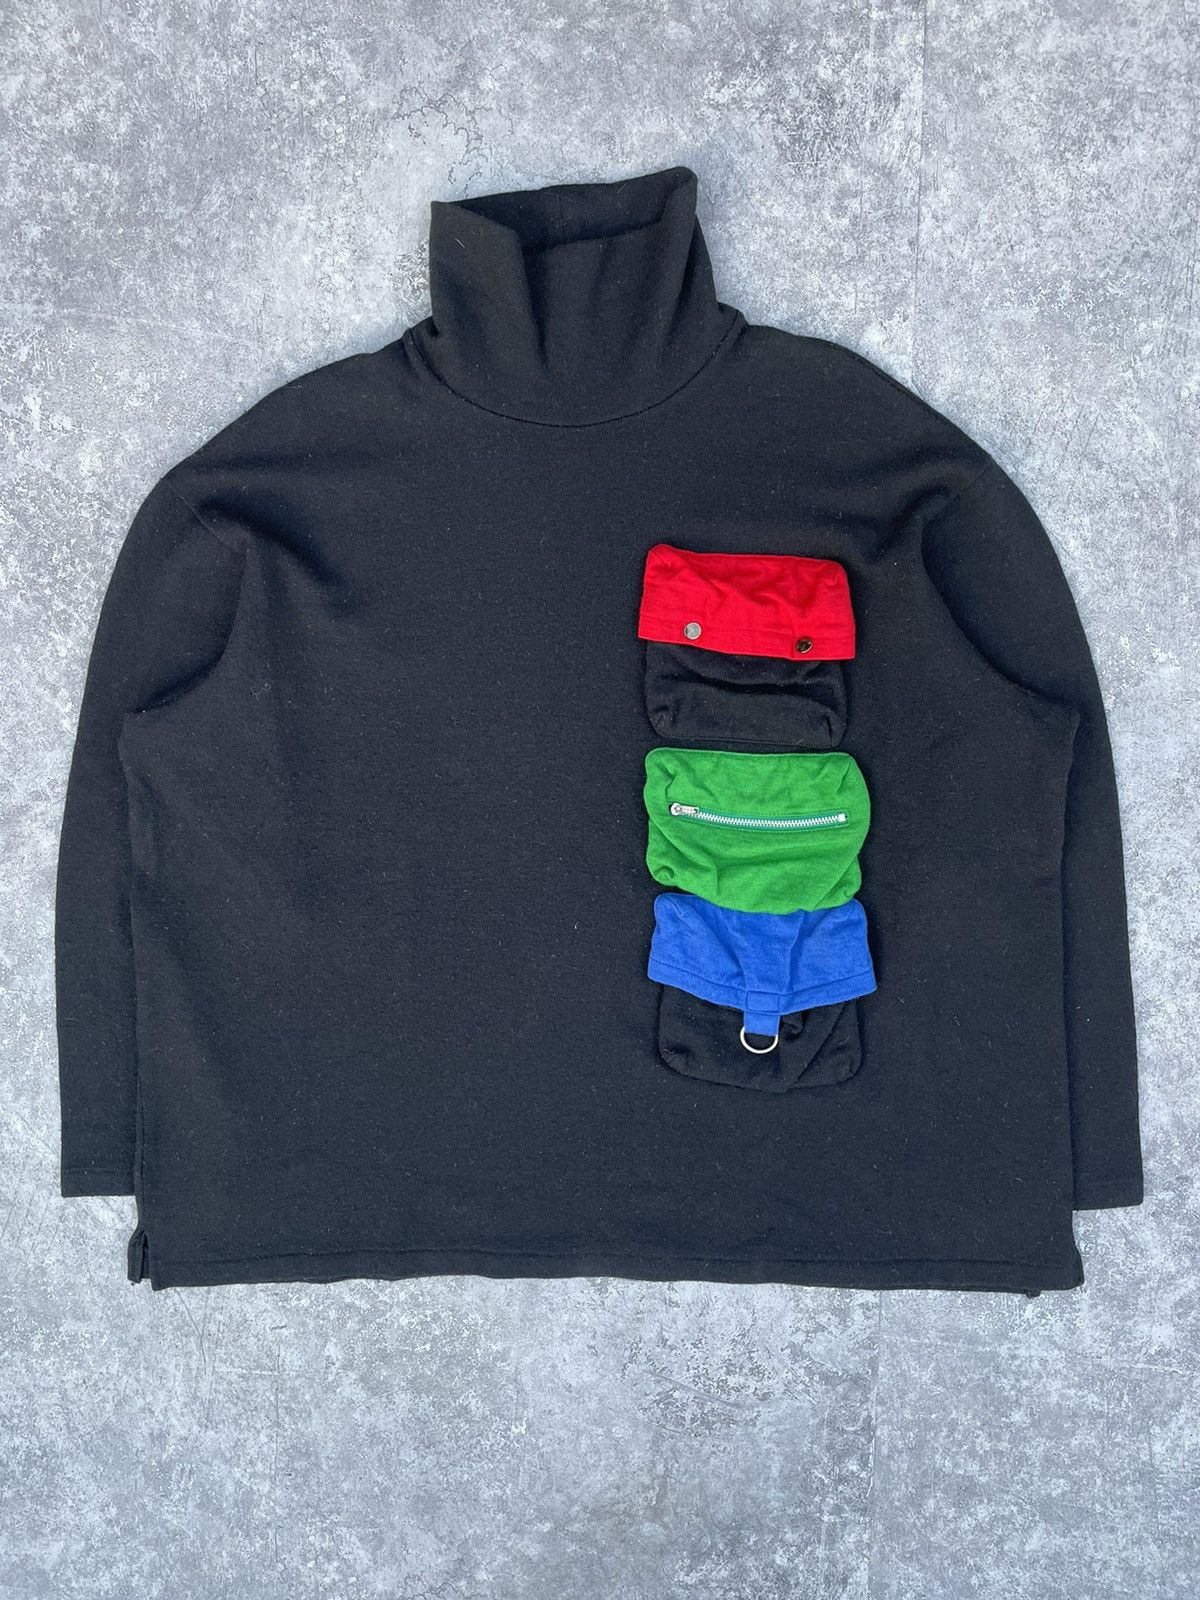 Yohji Yamamoto 90s Tactical Cargo Sweater | Grailed